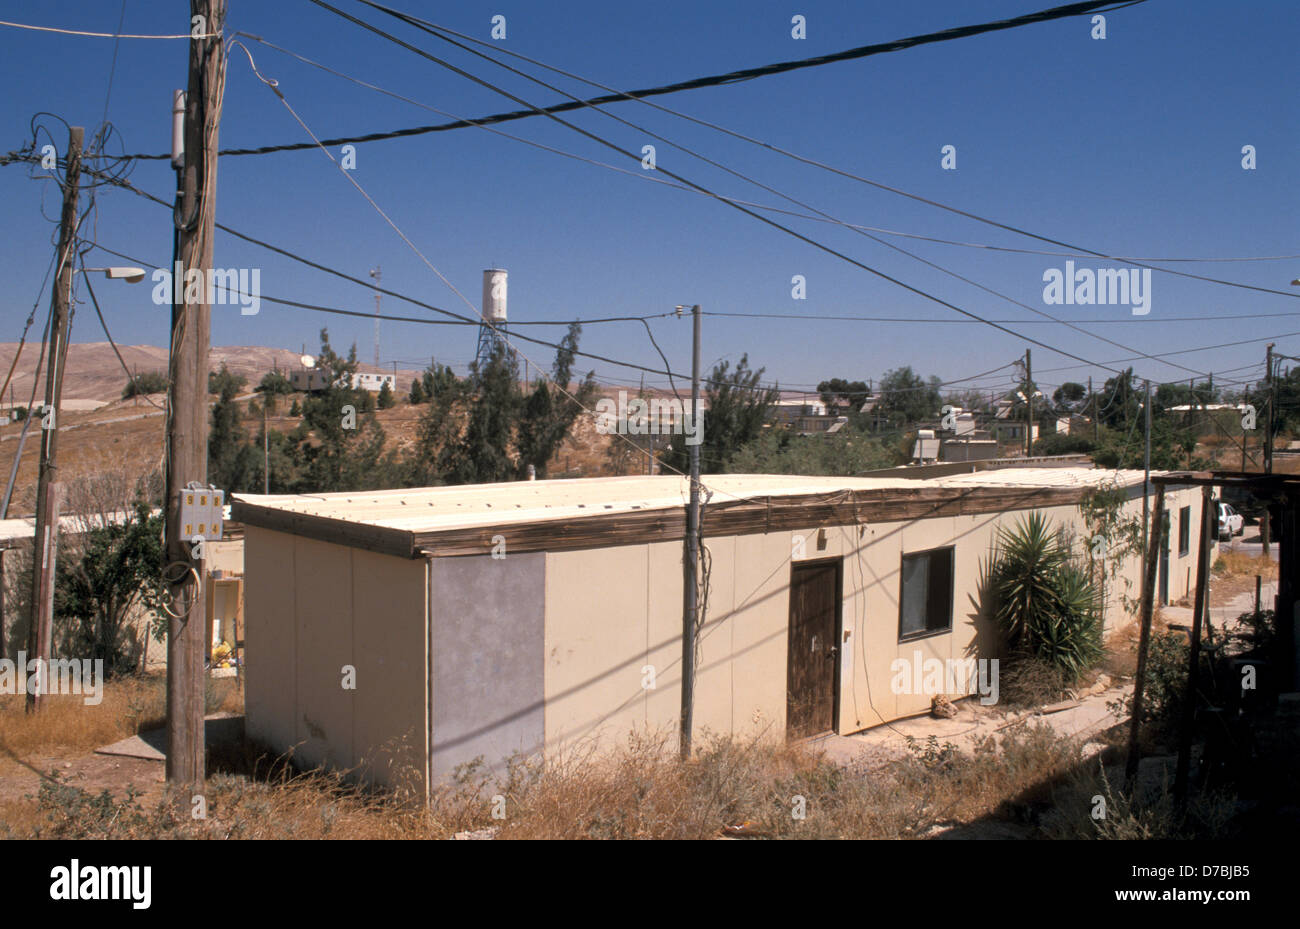 caravan housing at alon settlement in judea Stock Photo